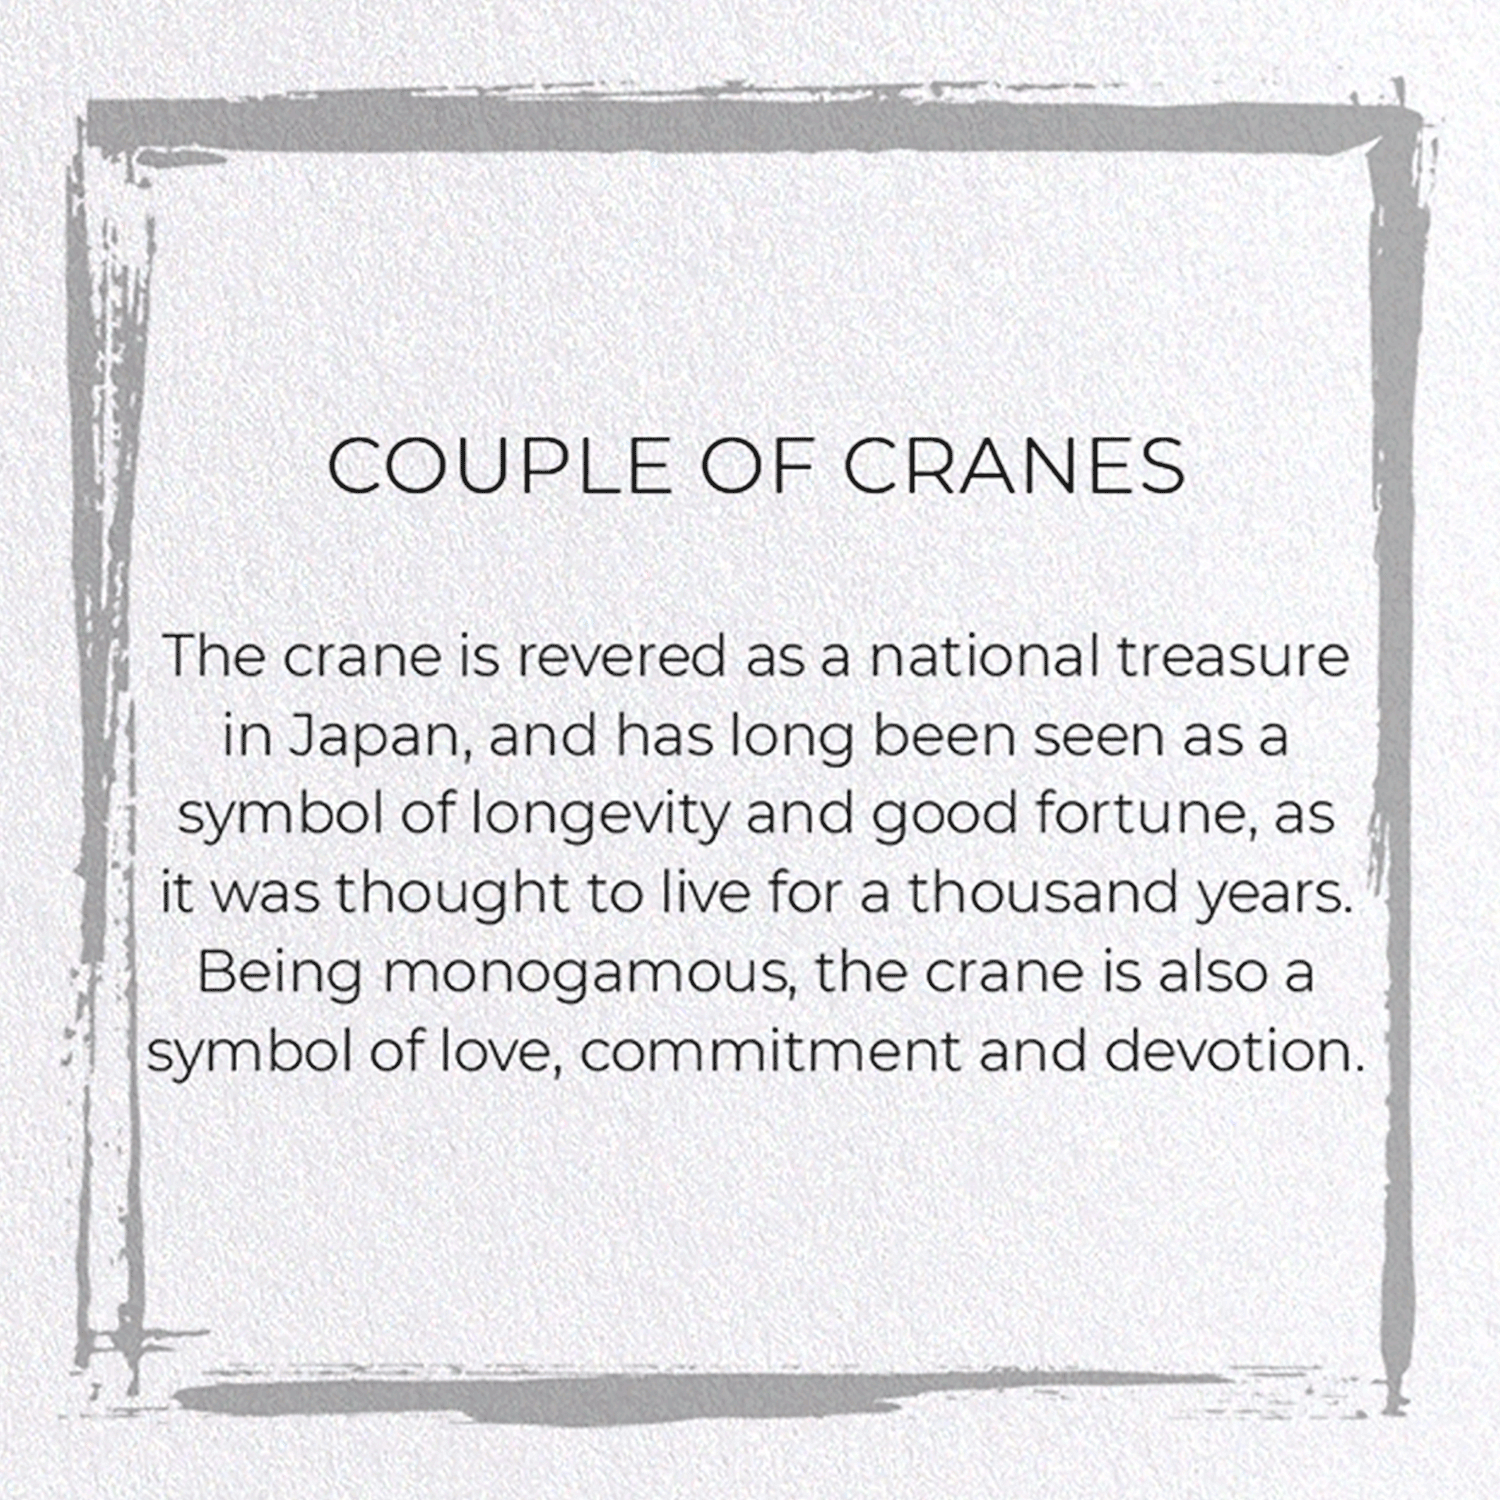 COUPLE OF CRANES